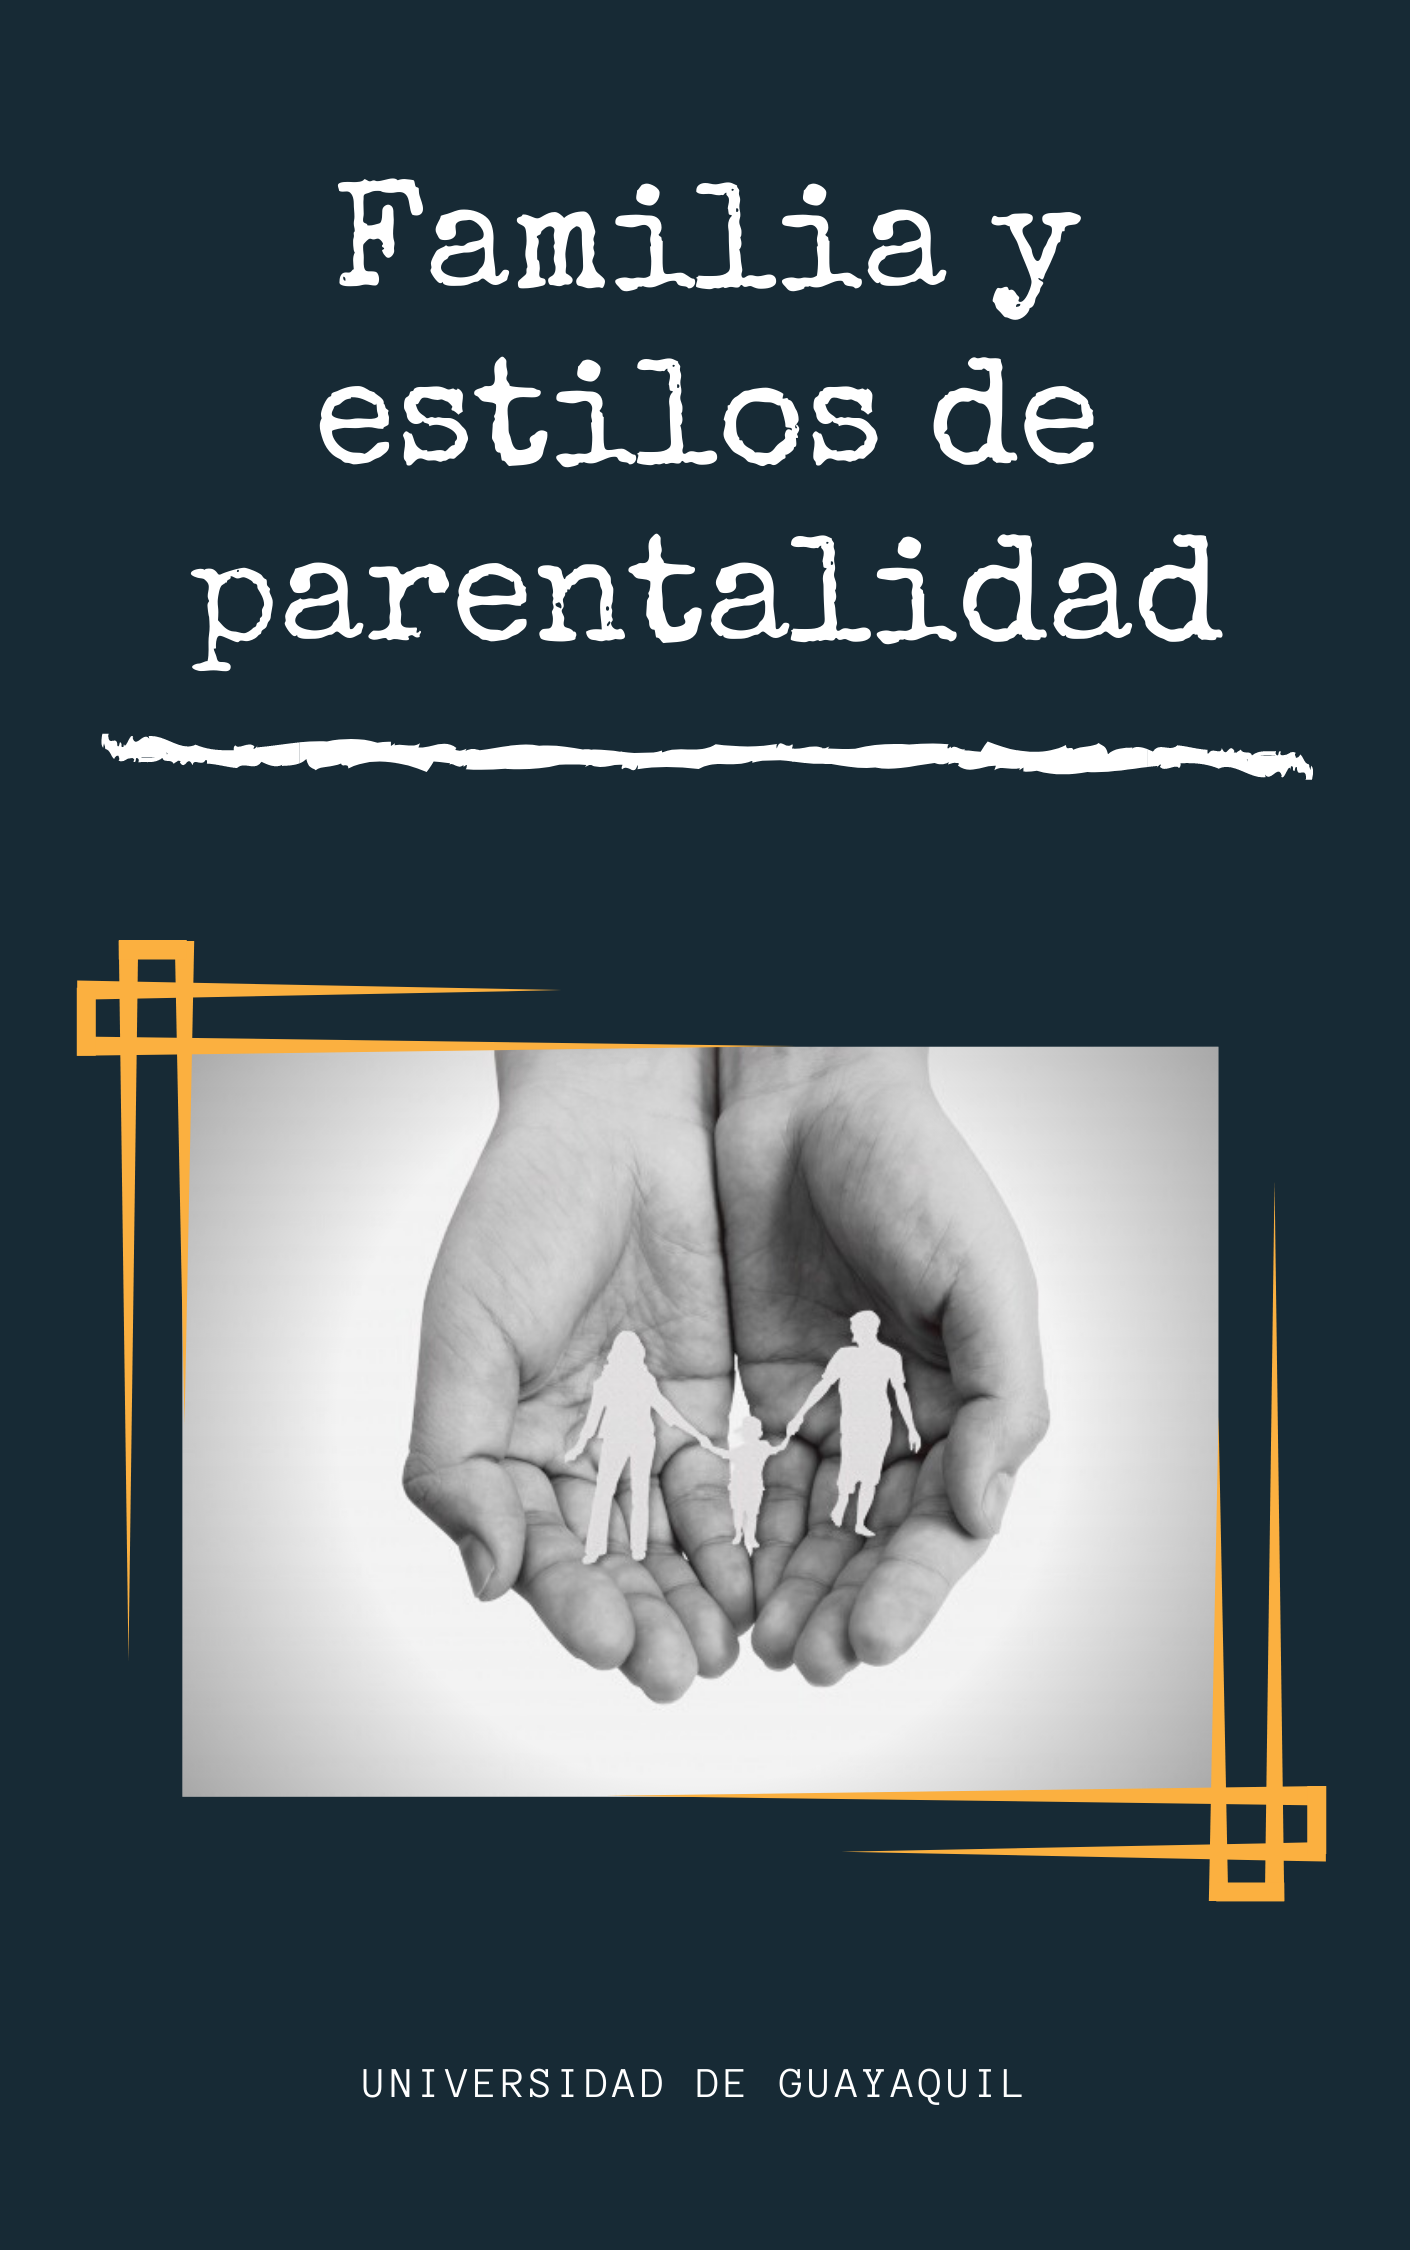 FAMILIA Y ESTILOS DE PARENTALIDAD